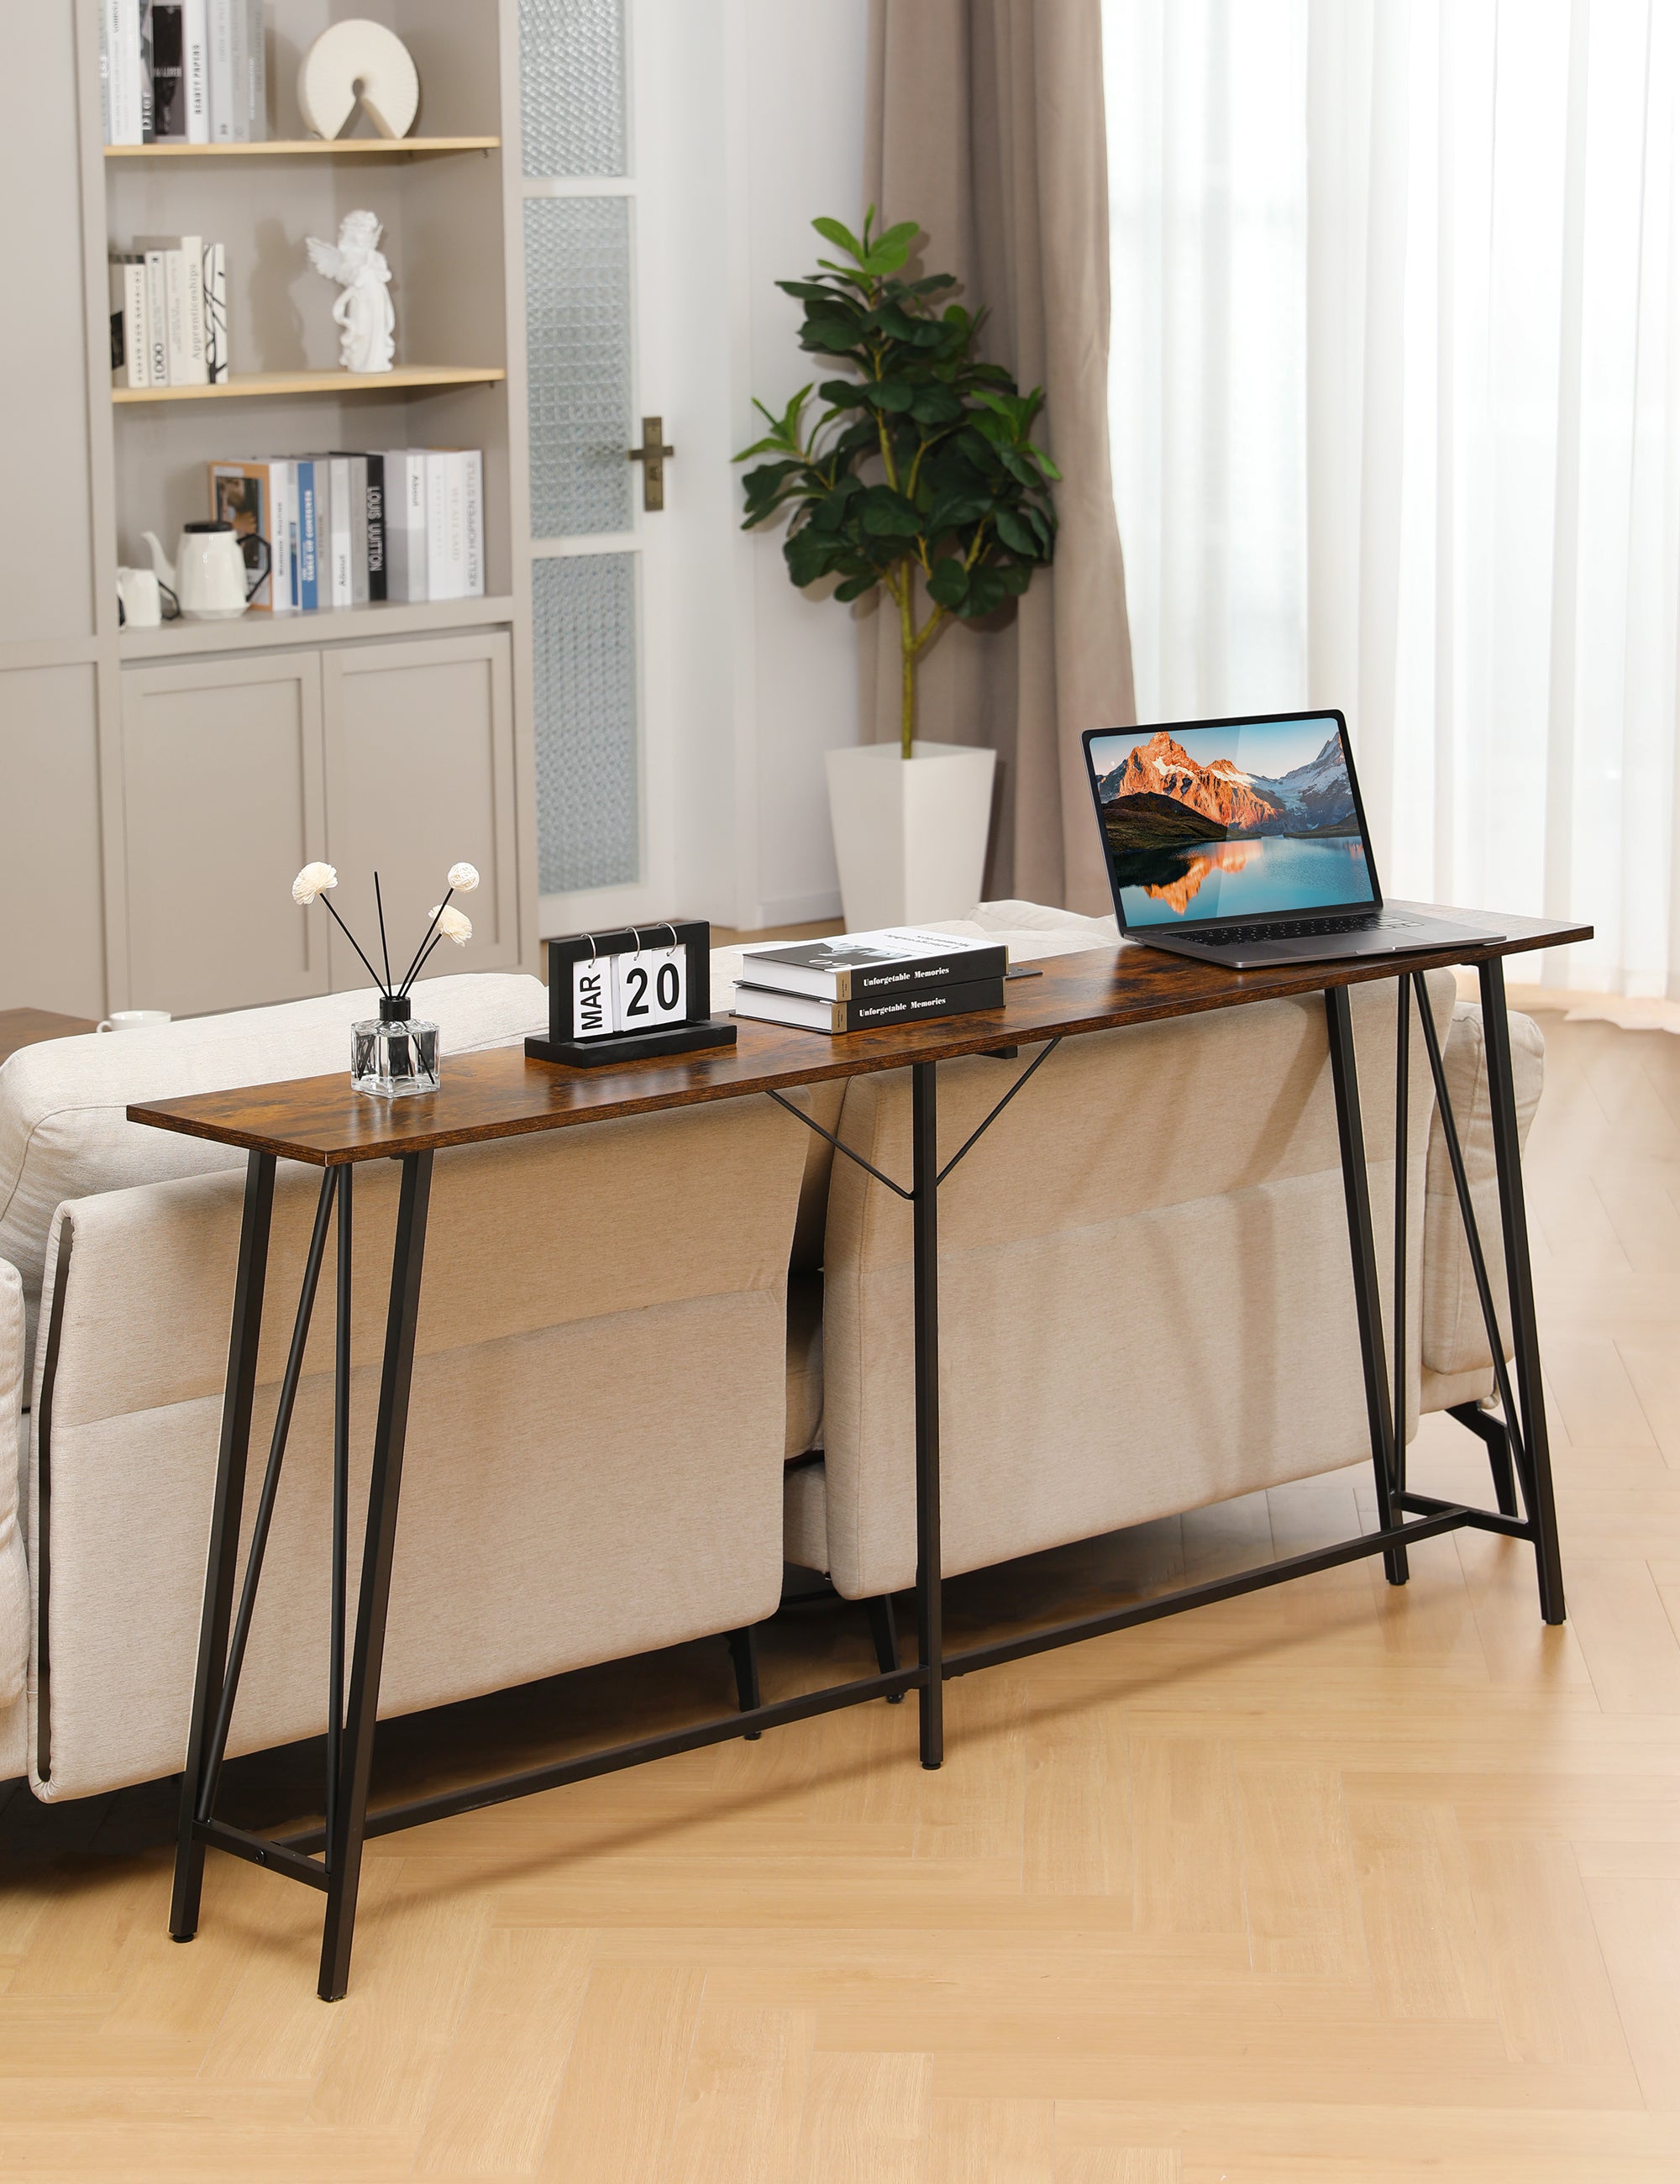 EVAJOY EN006 Console Table, 70.9” Industrial Sofa Table, Metal Frame & Inverted V-Shaped Design